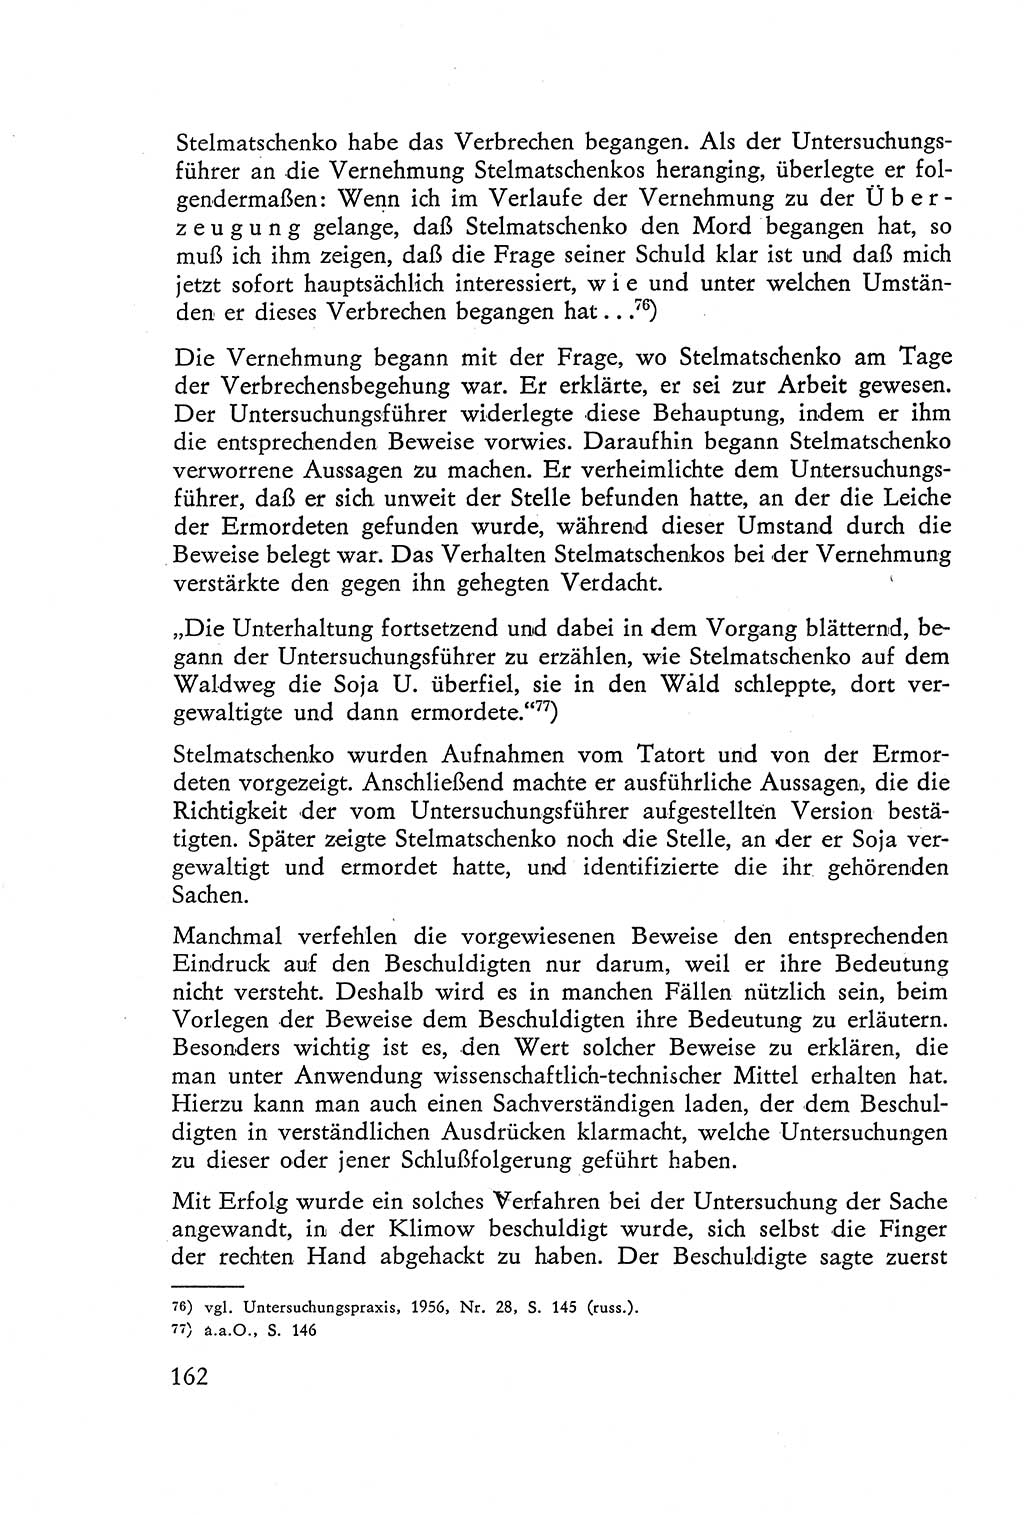 Die Vernehmung [Deutsche Demokratische Republik (DDR)] 1960, Seite 162 (Vern. DDR 1960, S. 162)